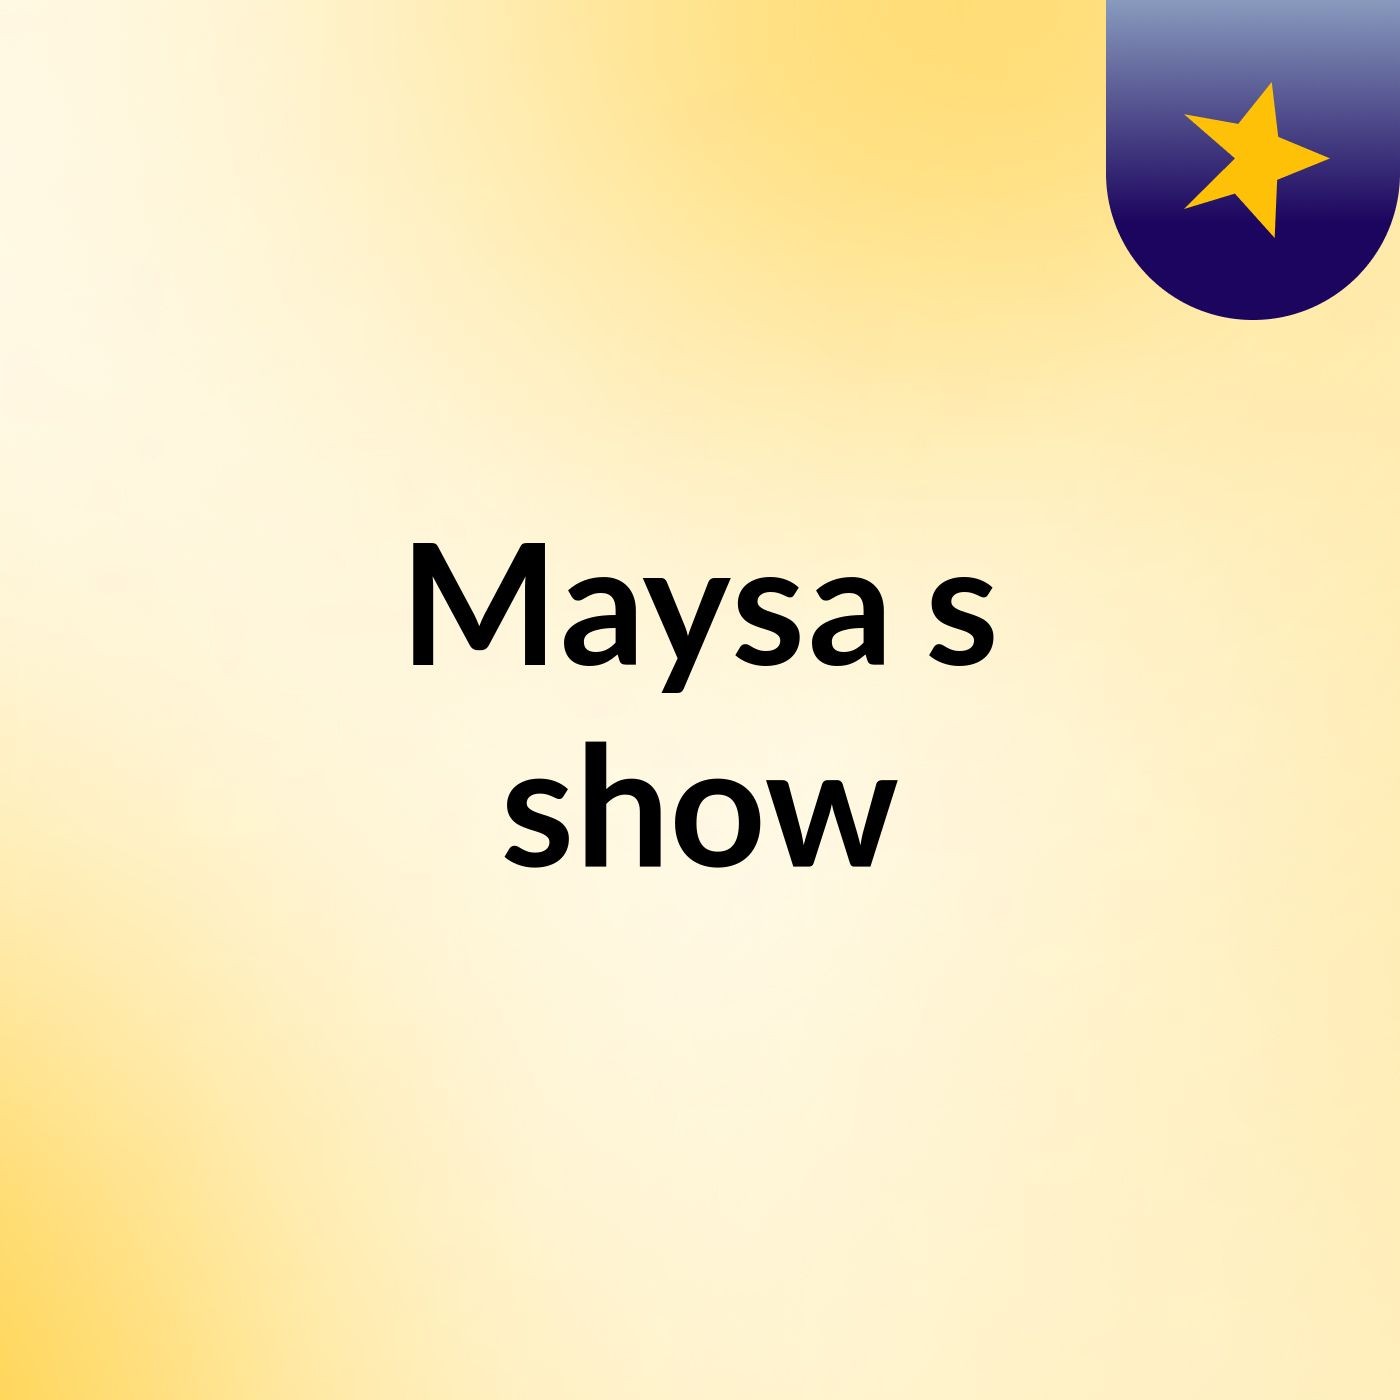 Maysa's show